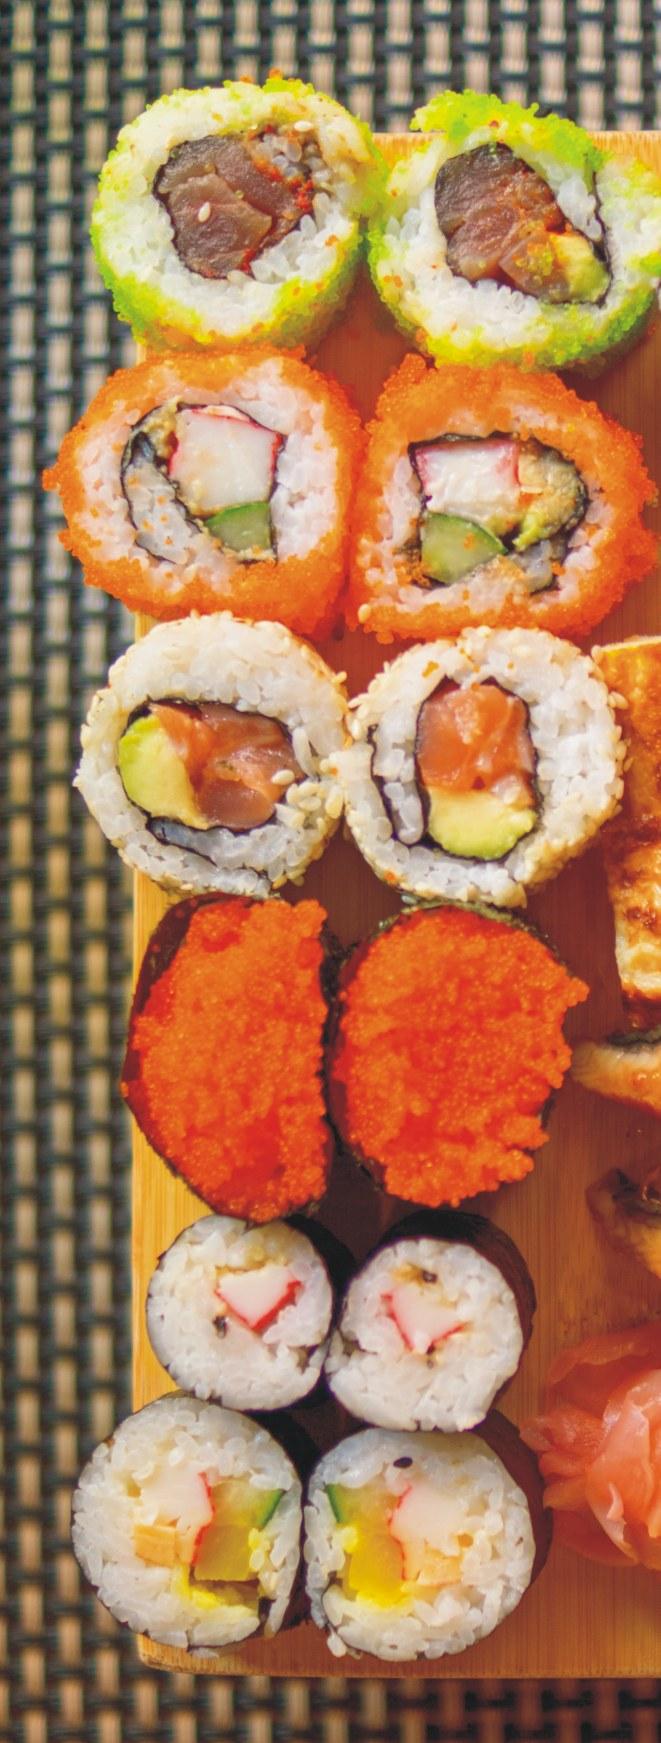 SUSHI Najnowsza pozycja w asortymencie i pójœcie z duchem czasu. To starannie zaprojektowane zestawy sushi, które s¹ idealnym daniem gotowym, na lunch czy kolacjê.